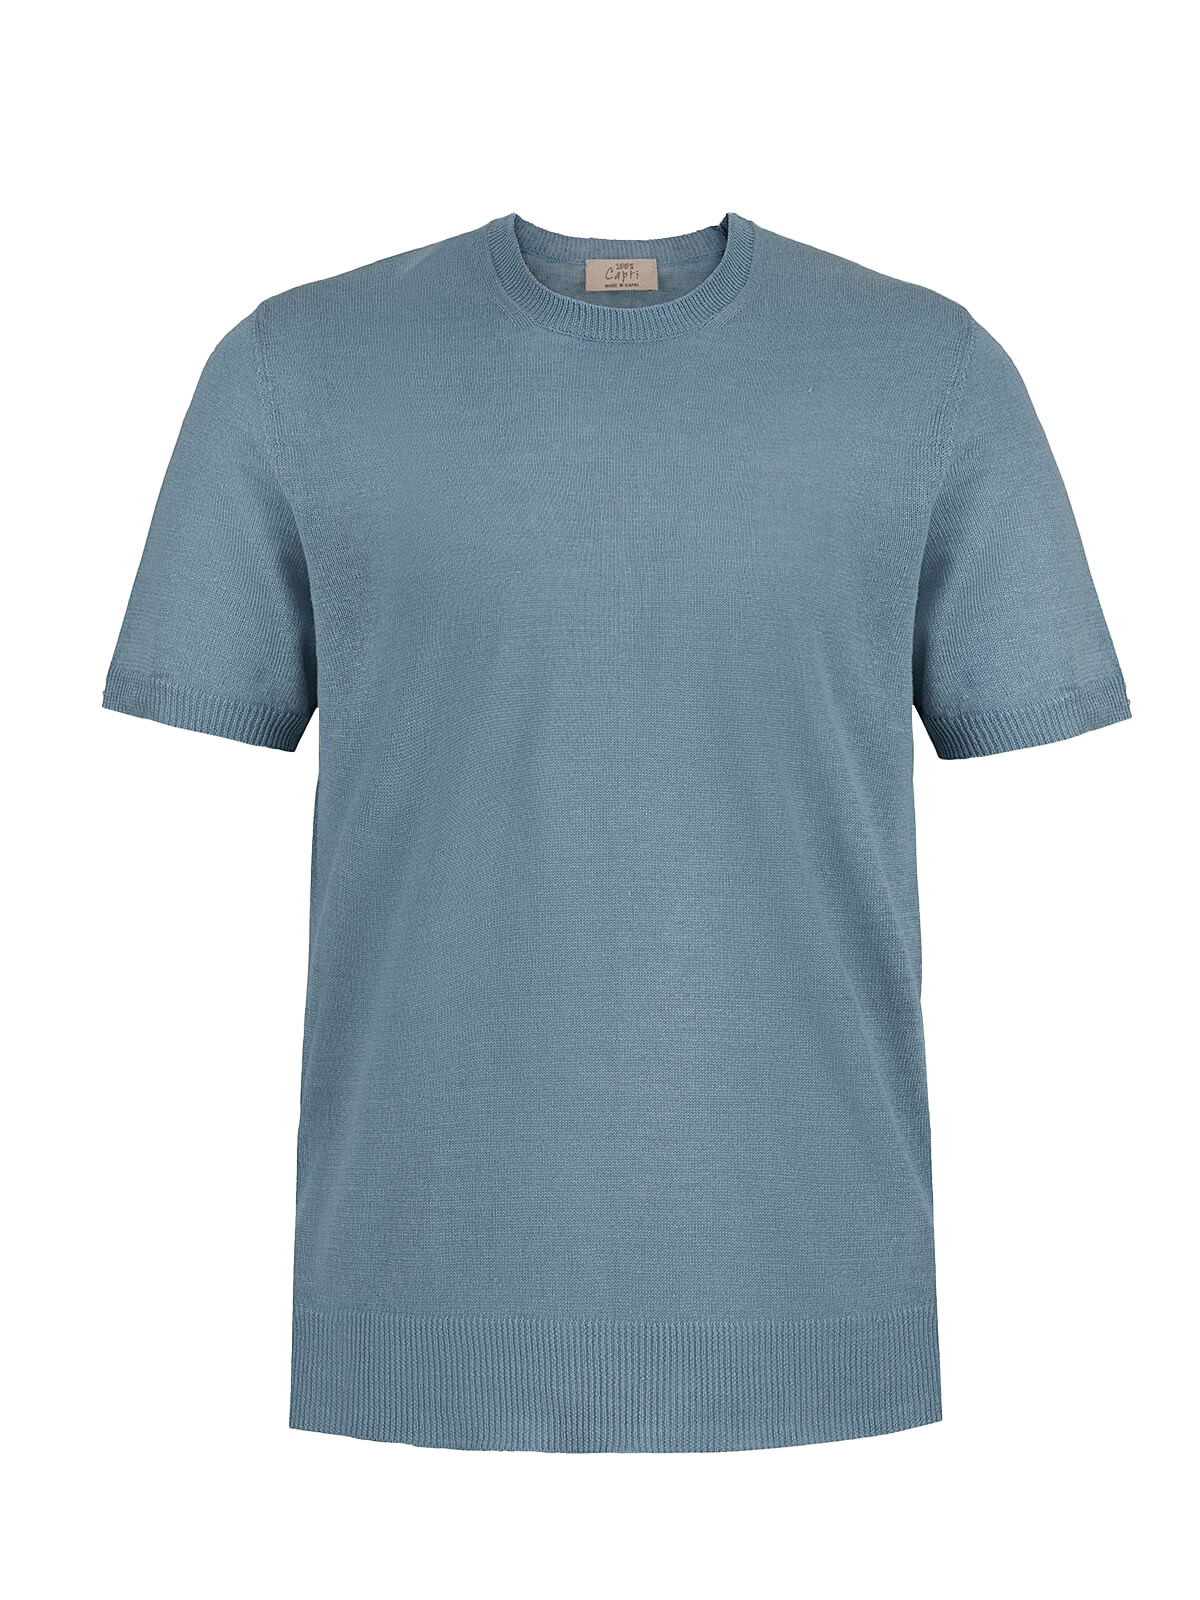 T-Shirt M/C 100% Capri jeans linen t-shirt front